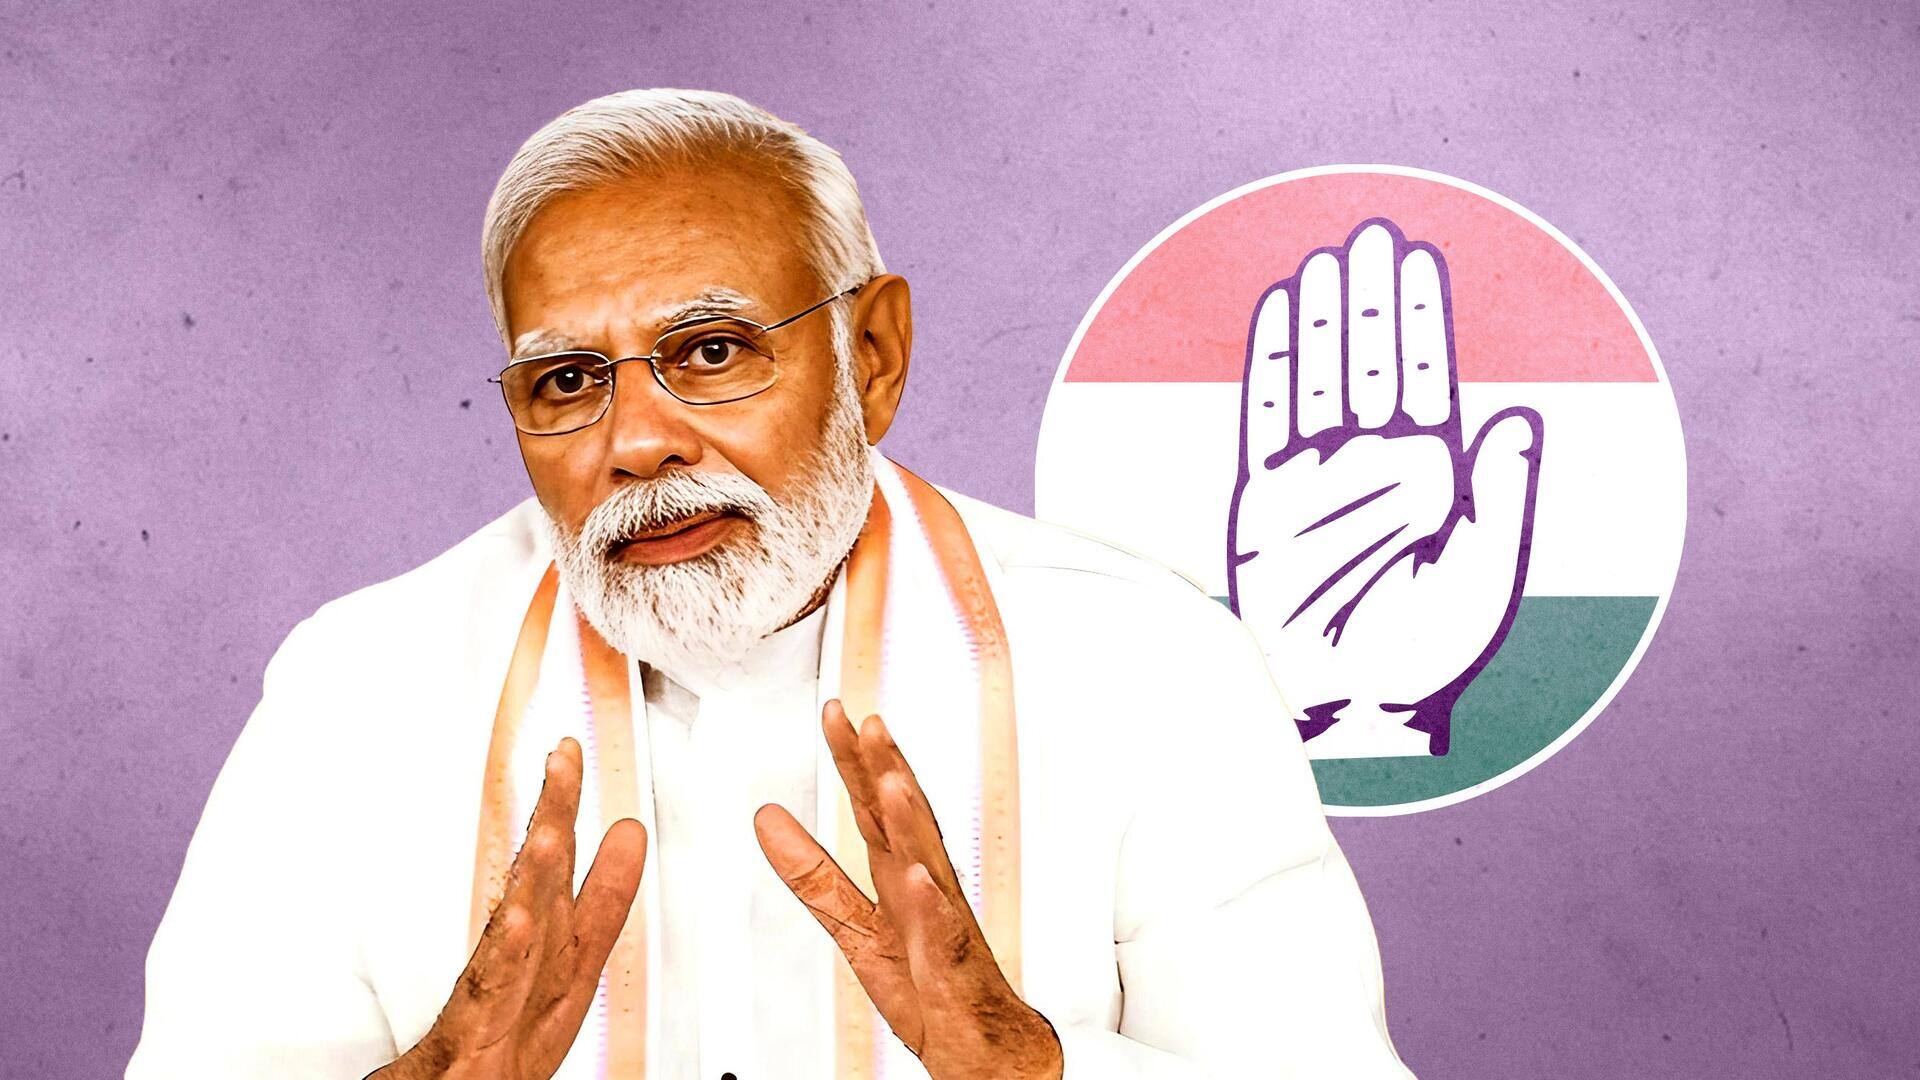 Didn't even spare Mahadev: Modi attacks Congress over betting scam